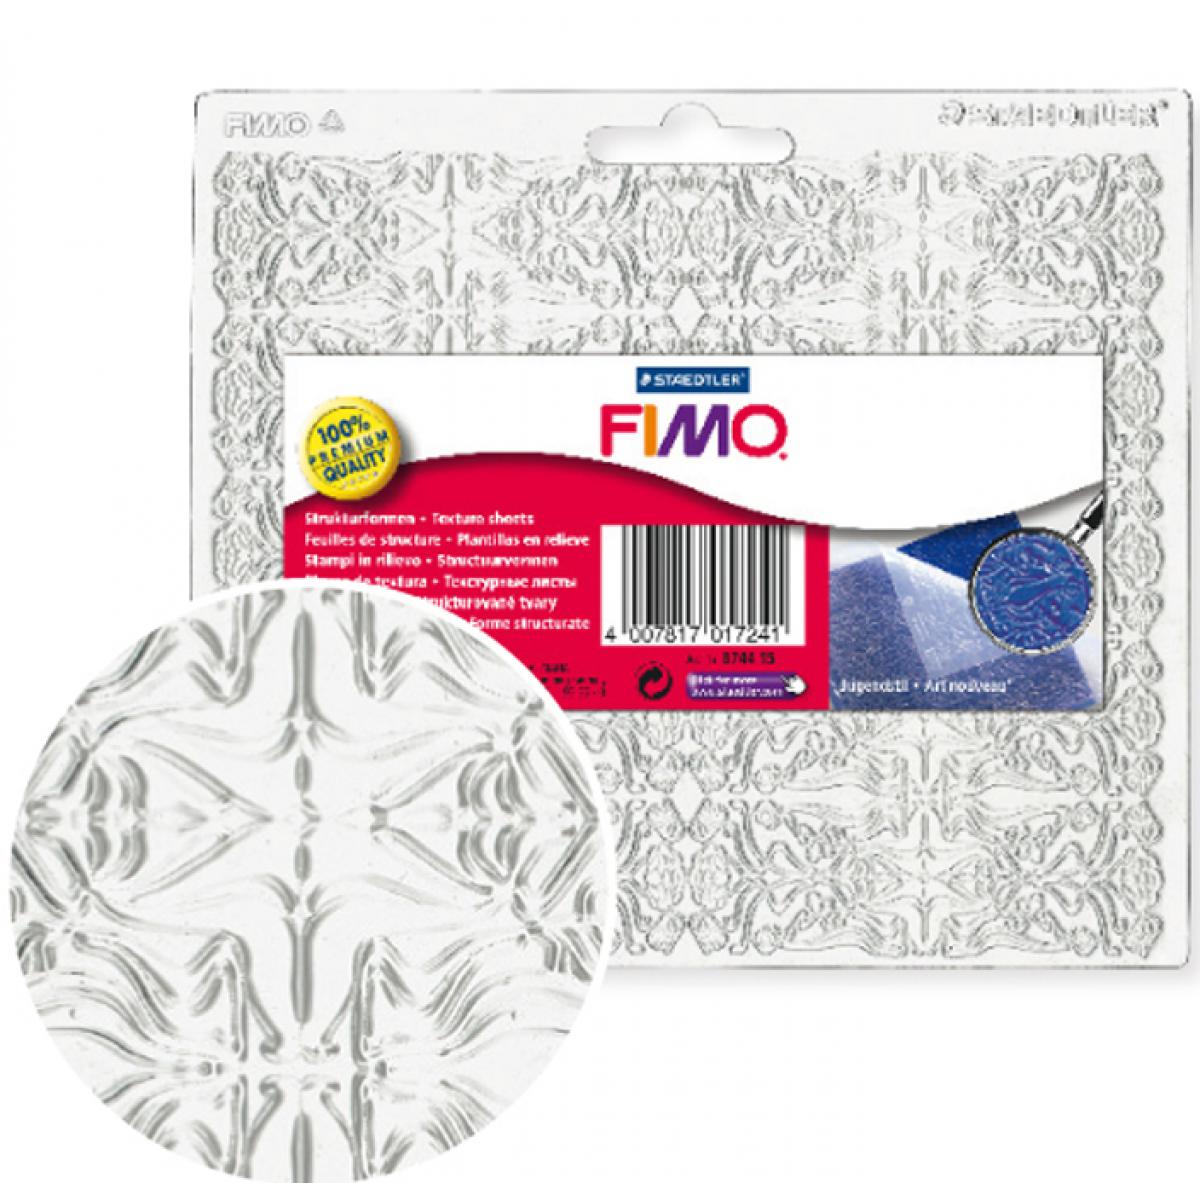 Fimo - Plaque de texture Fimo Art nouveau - Fimo - Modelage